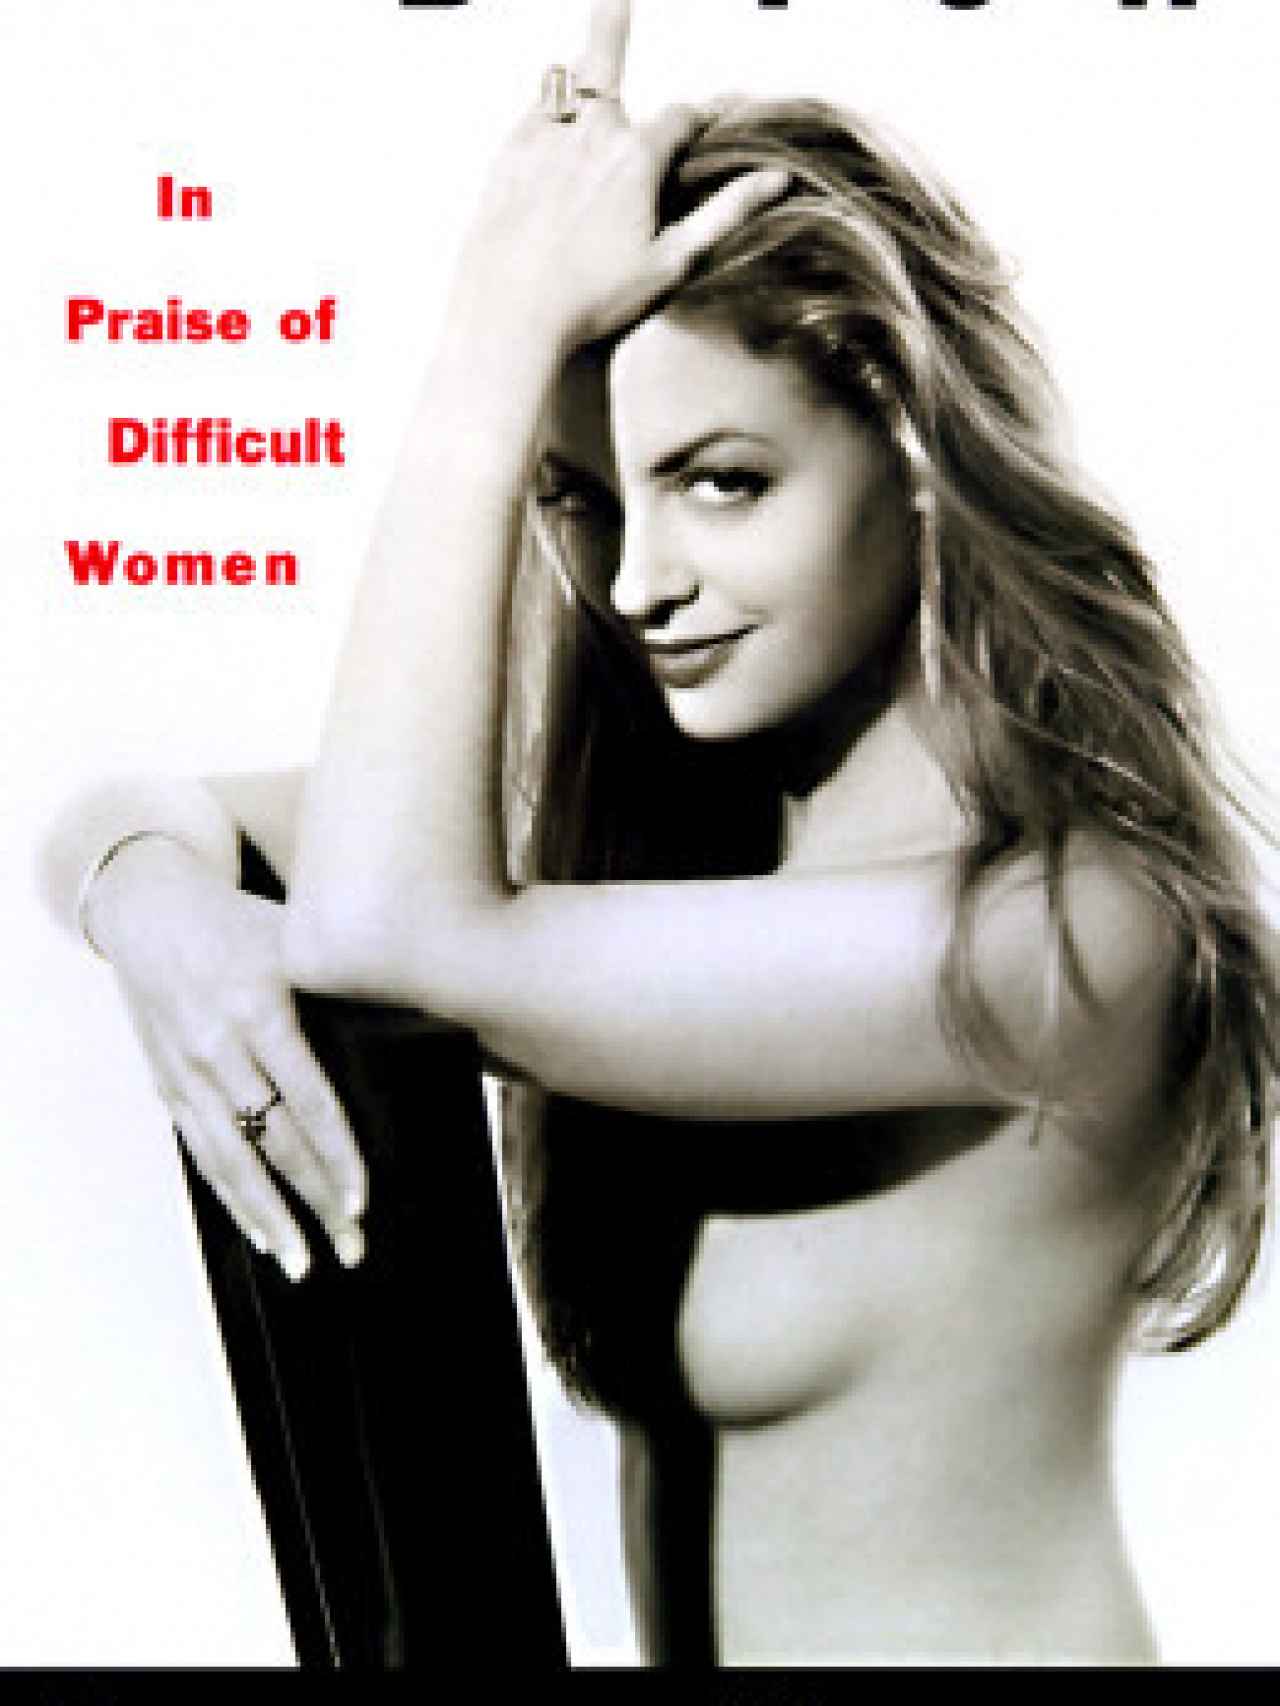 La portada del libro de Elisabeth: Bitch: in praise of difficult women.